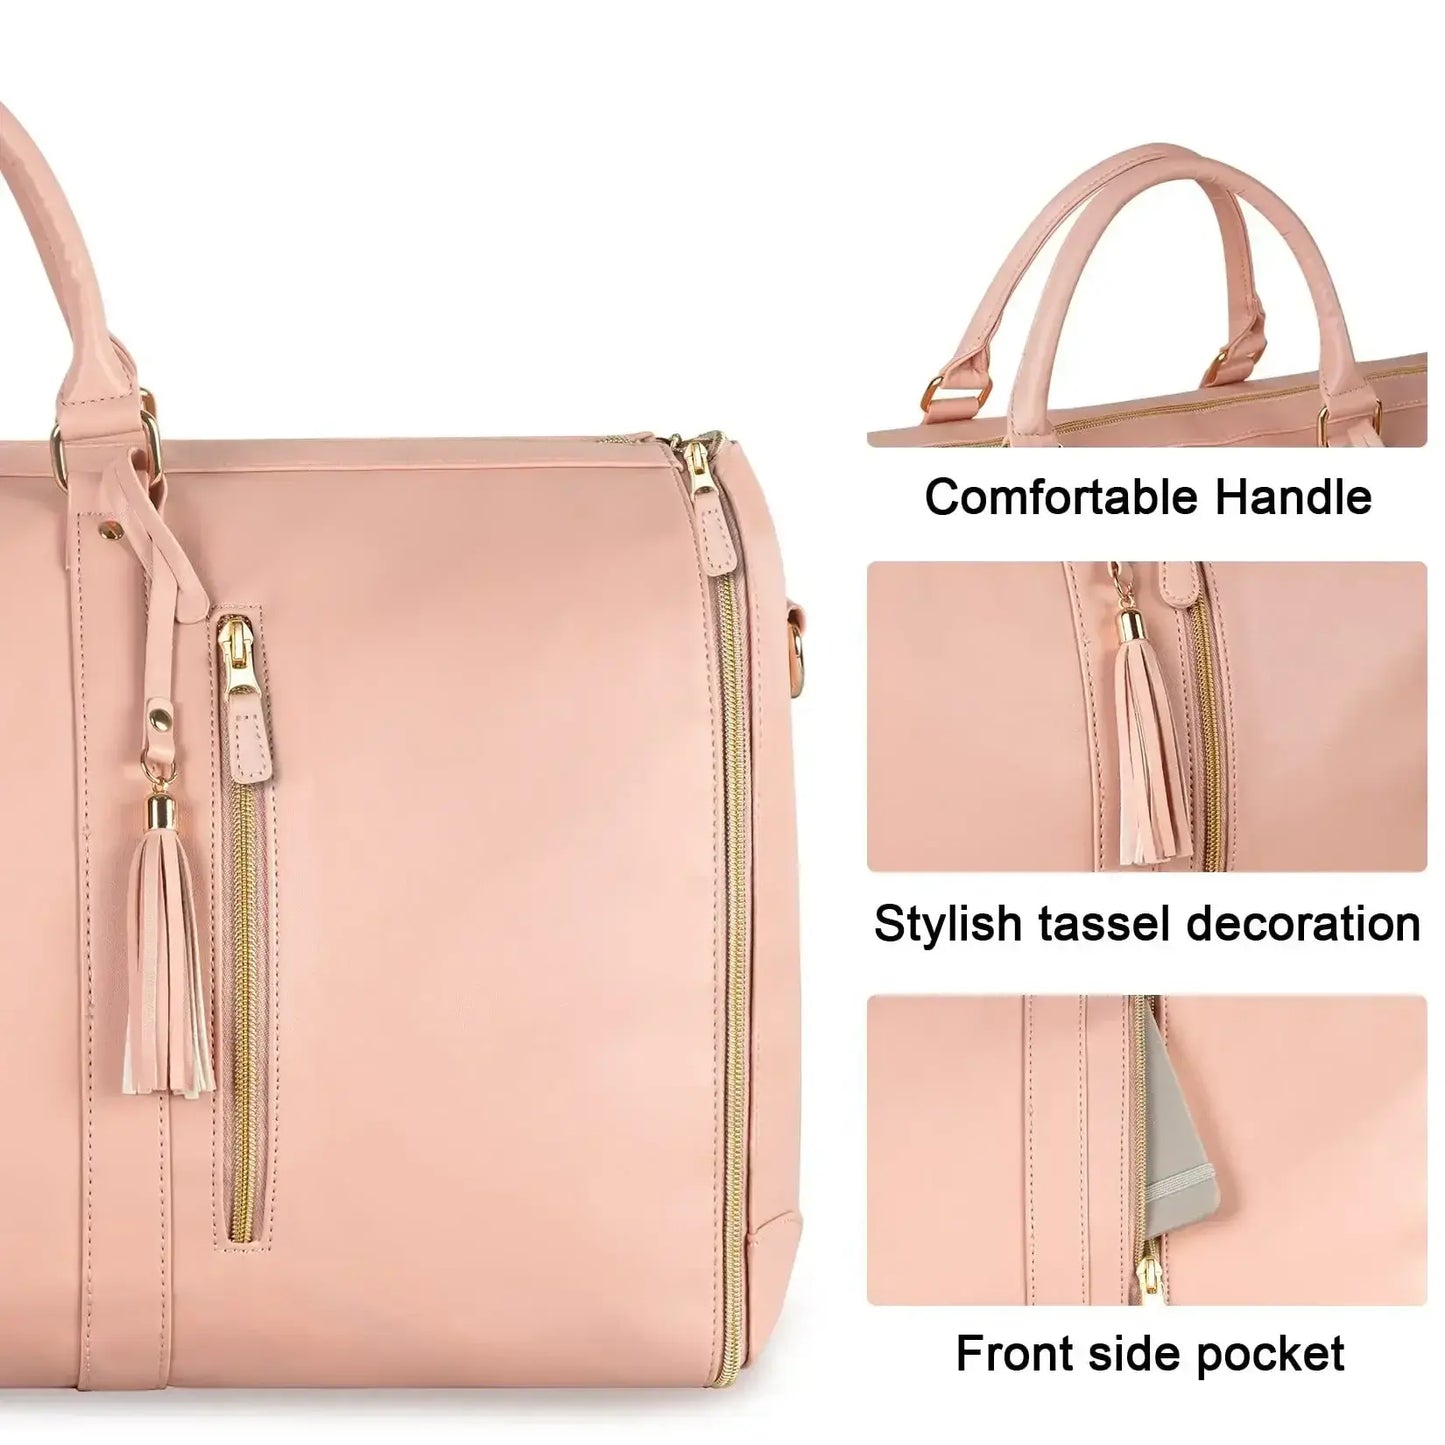 Women's Foldable Travel Duffle Bag - Duffel Daddy